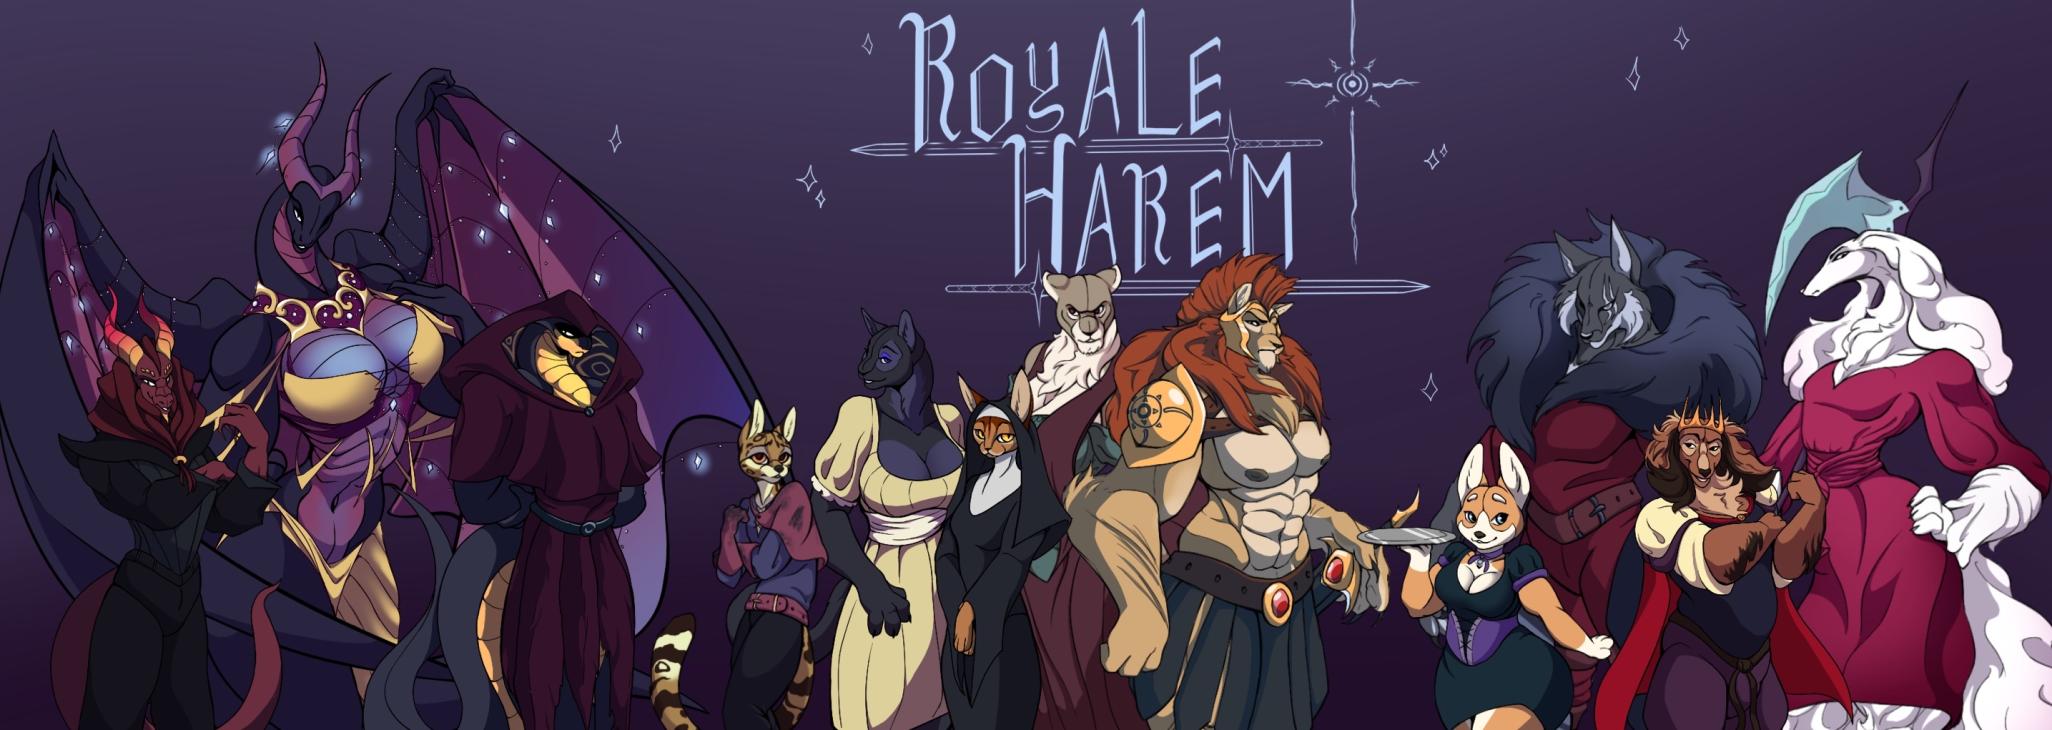 Royale Harem poster